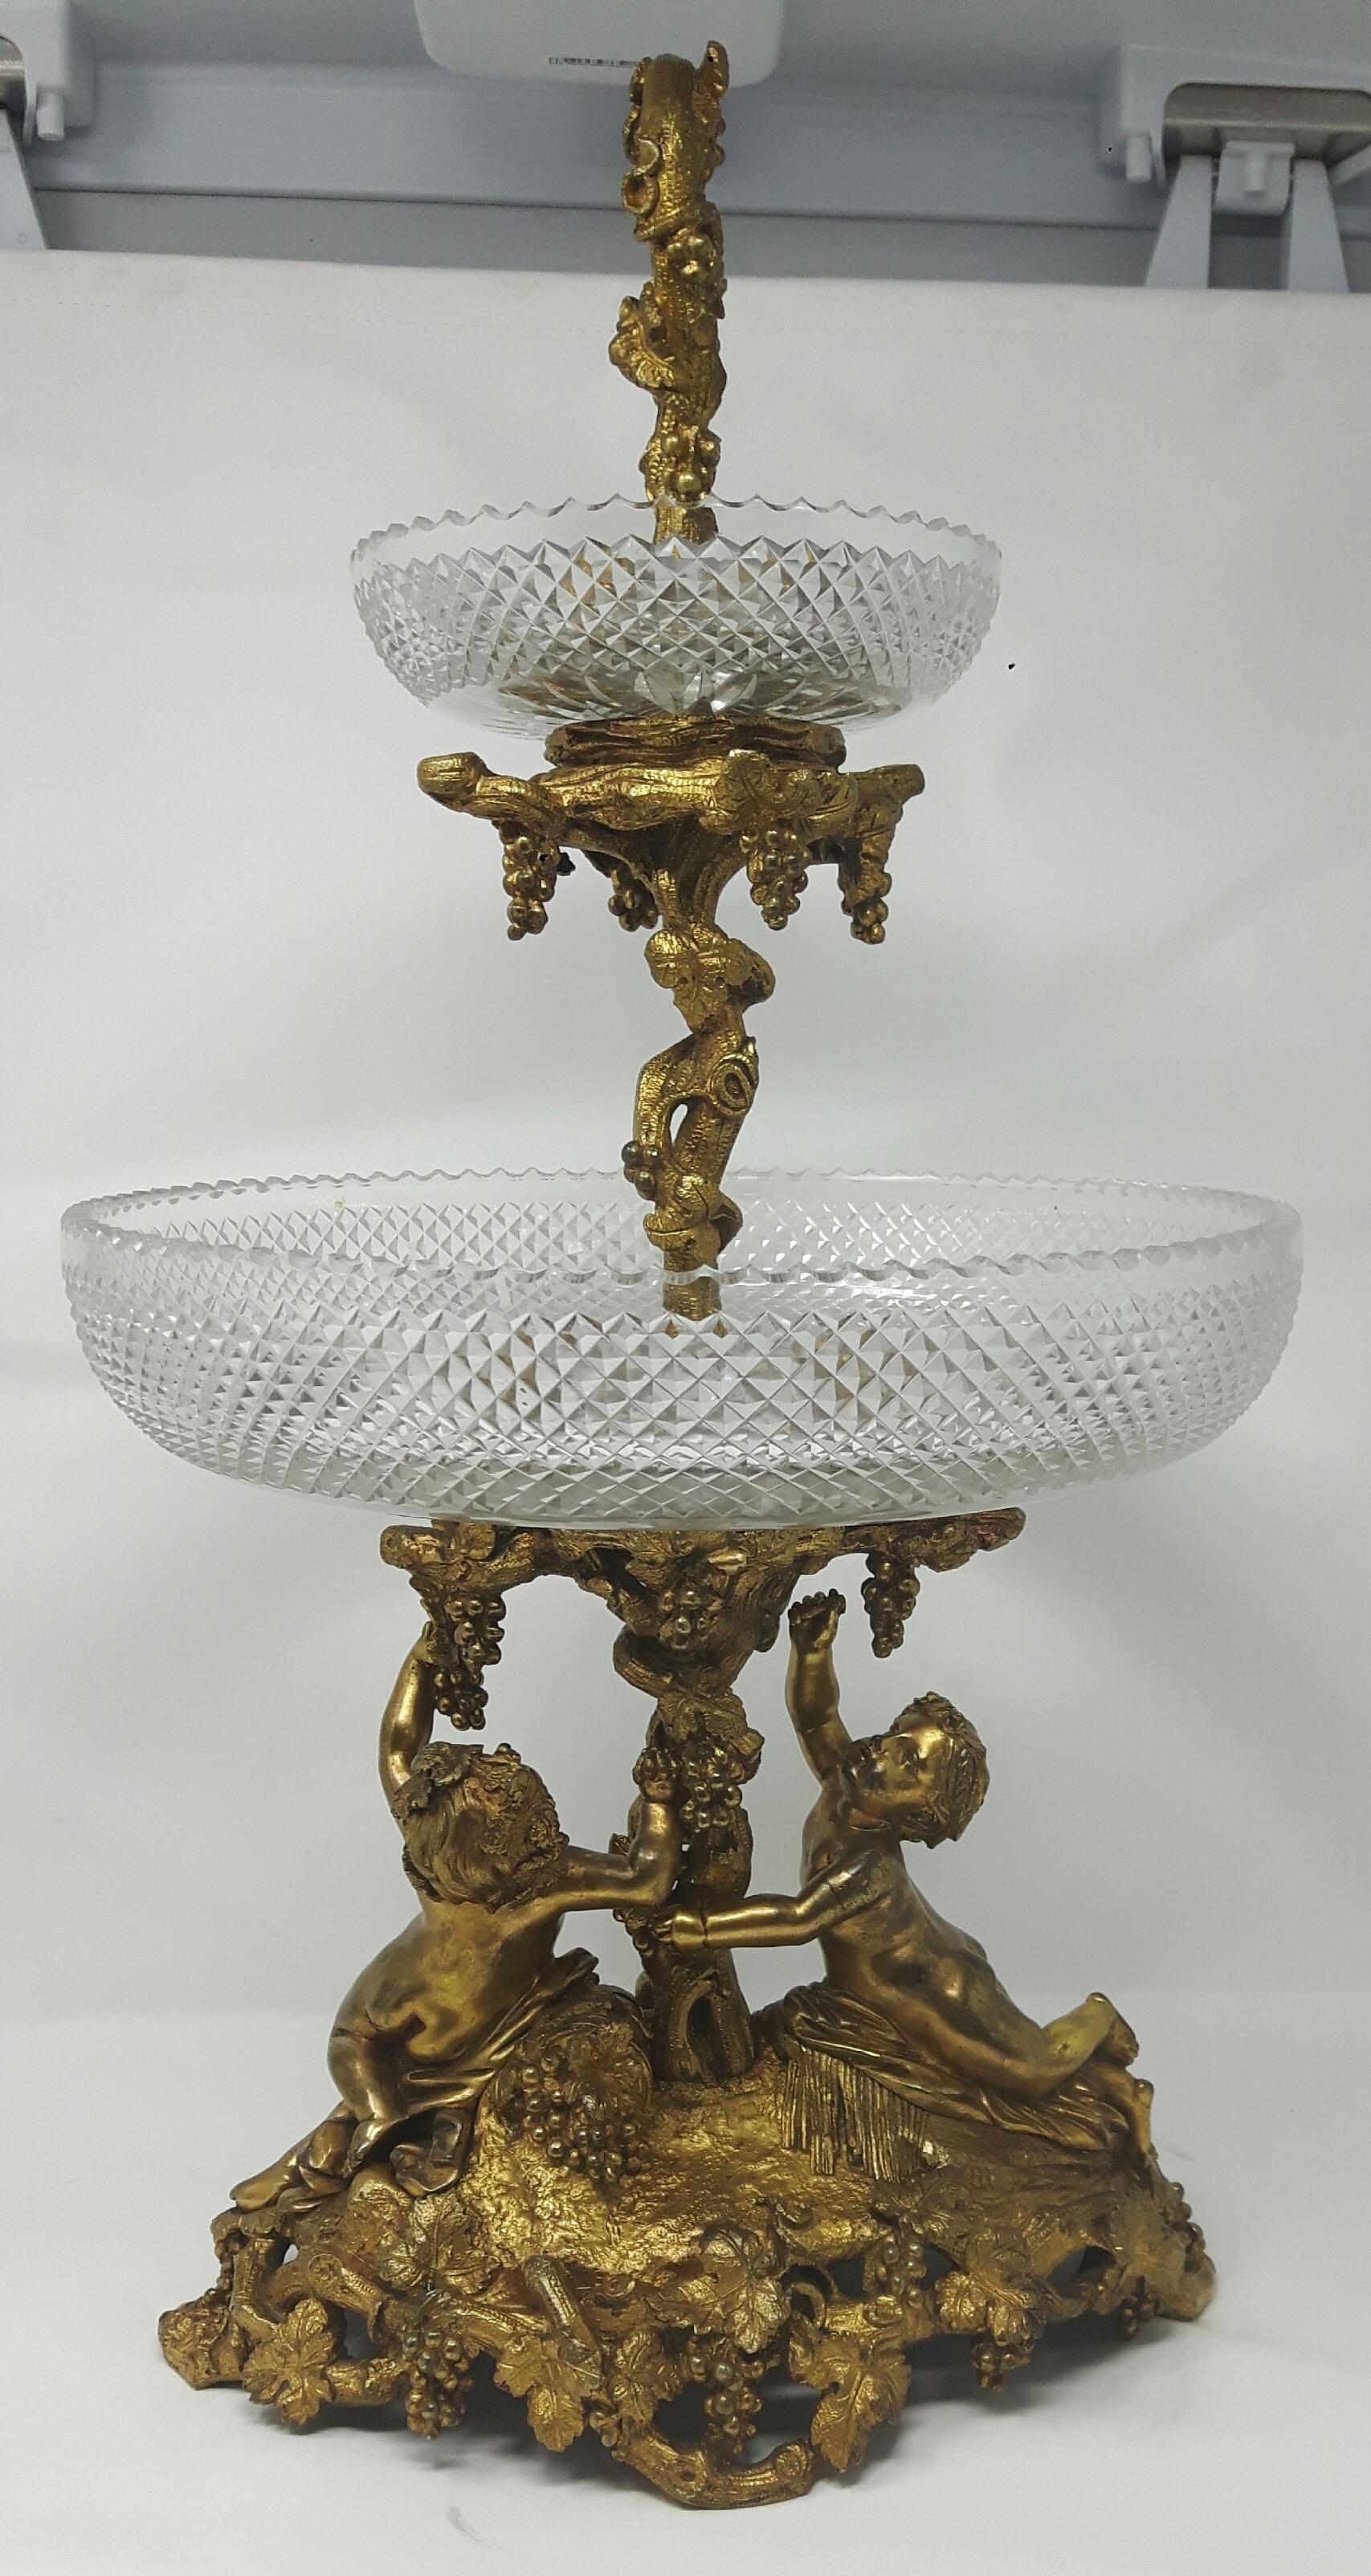 Un centre de table en bronze doré, avec deux coupes bien taillées sur un centre de vigne fruitière soutenu par deux putti sur une base ovale.